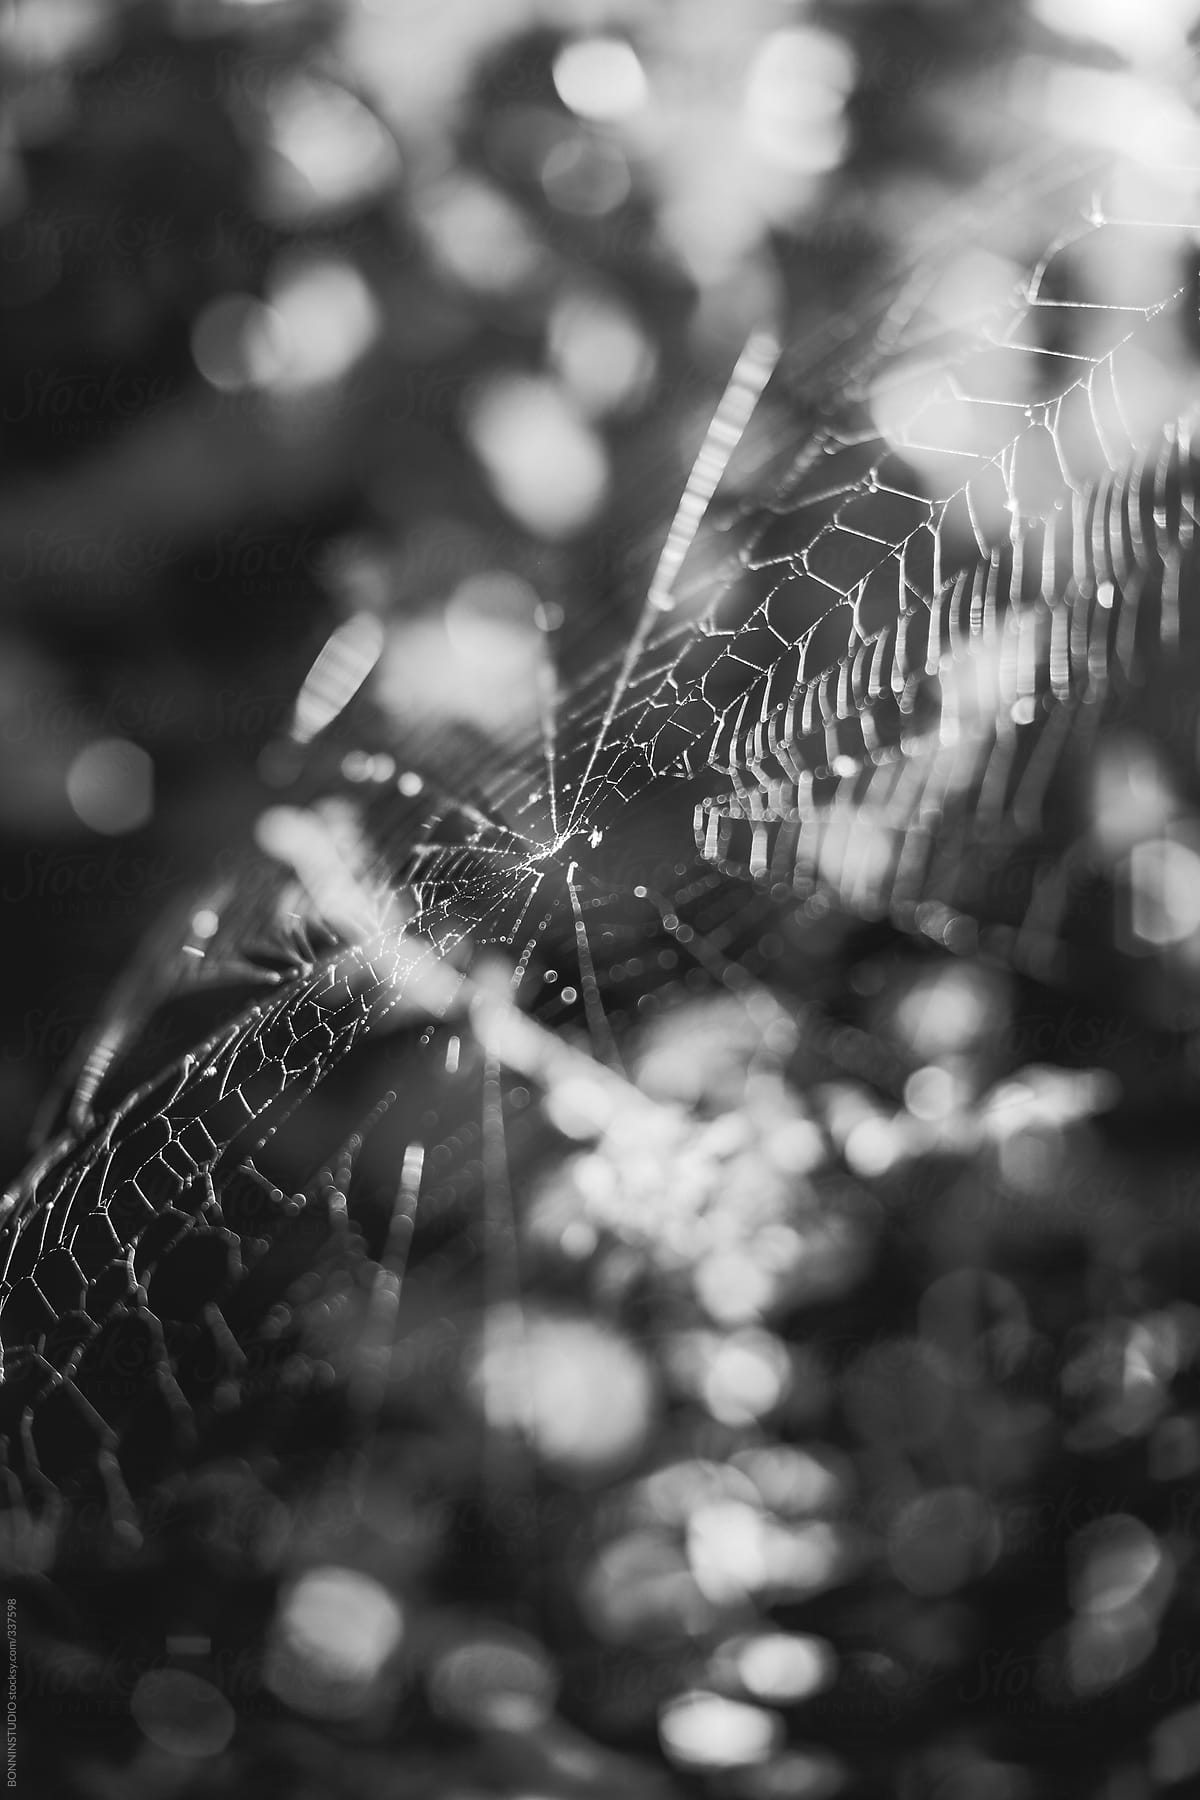 Spider web halloween background.